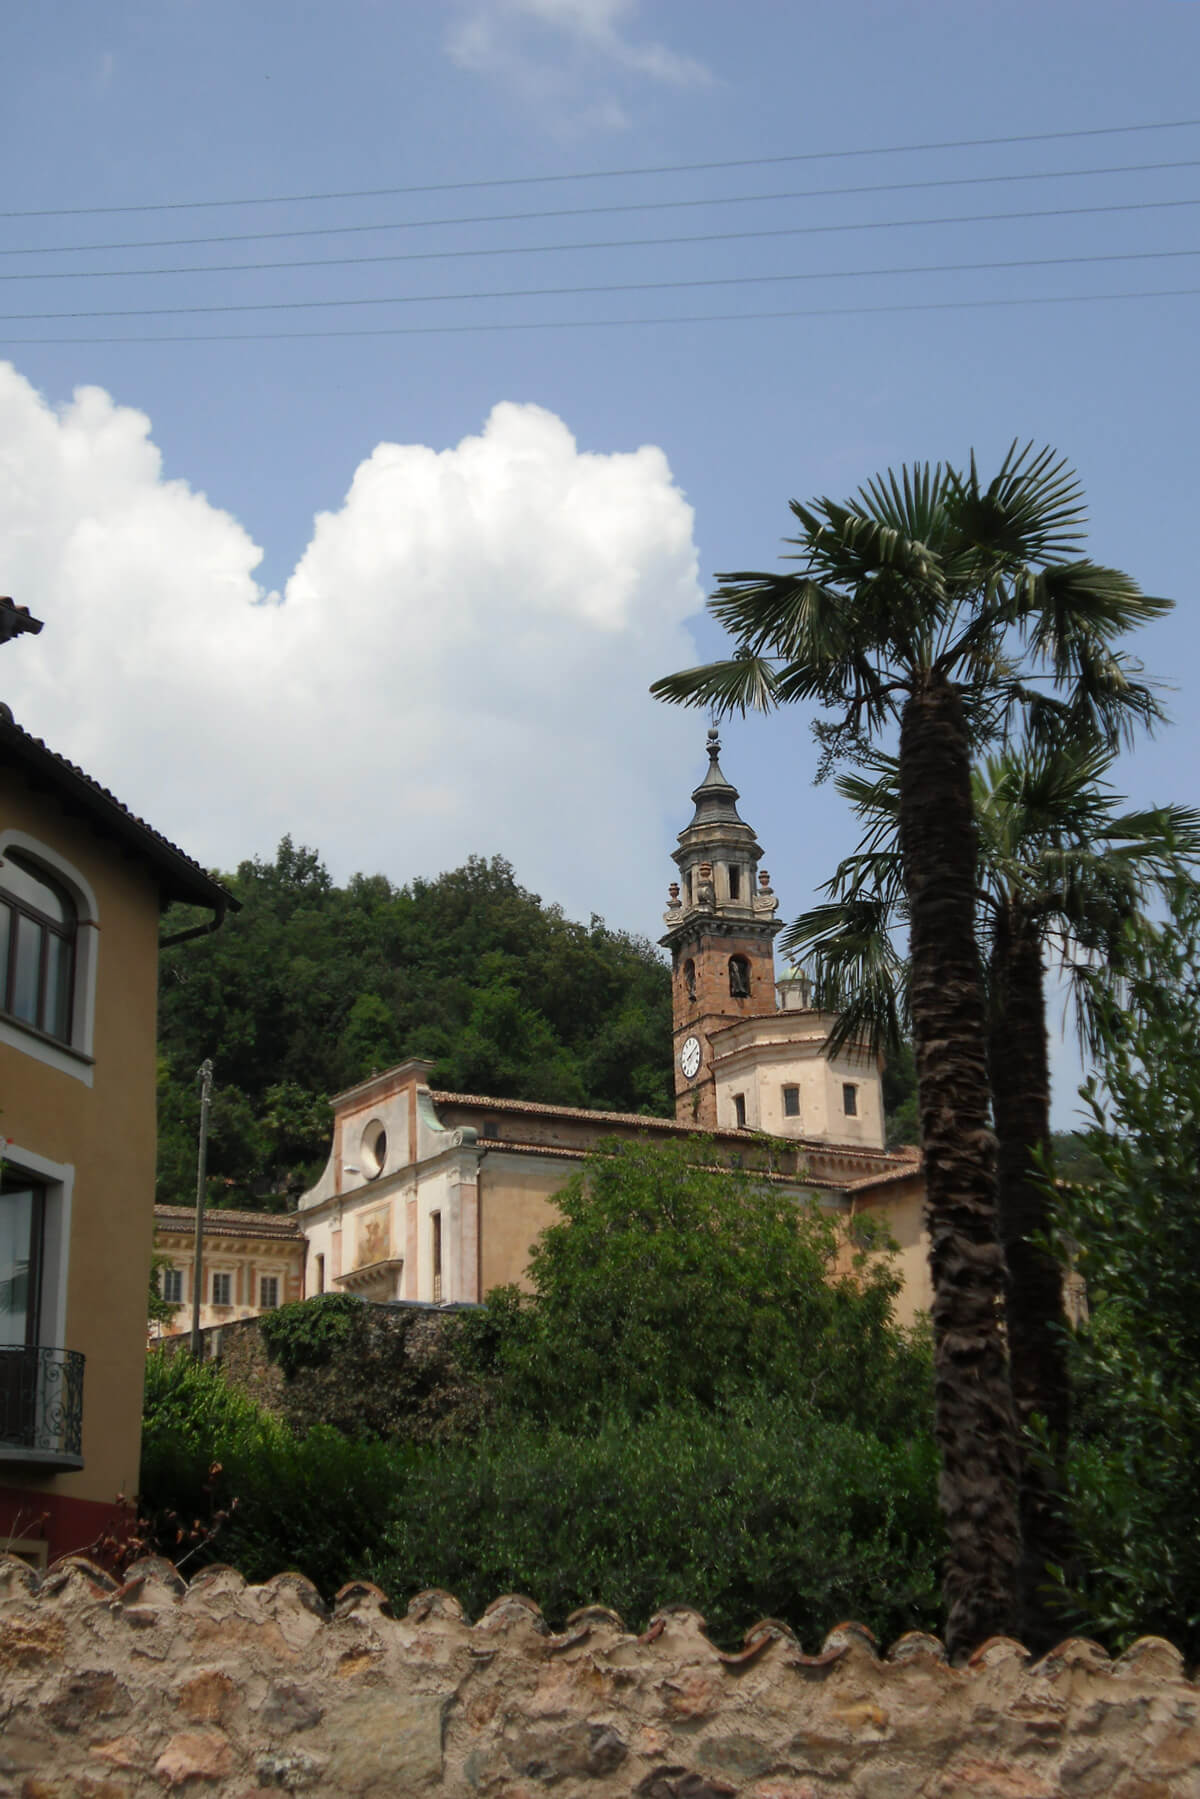 The town of Carona in Ticino